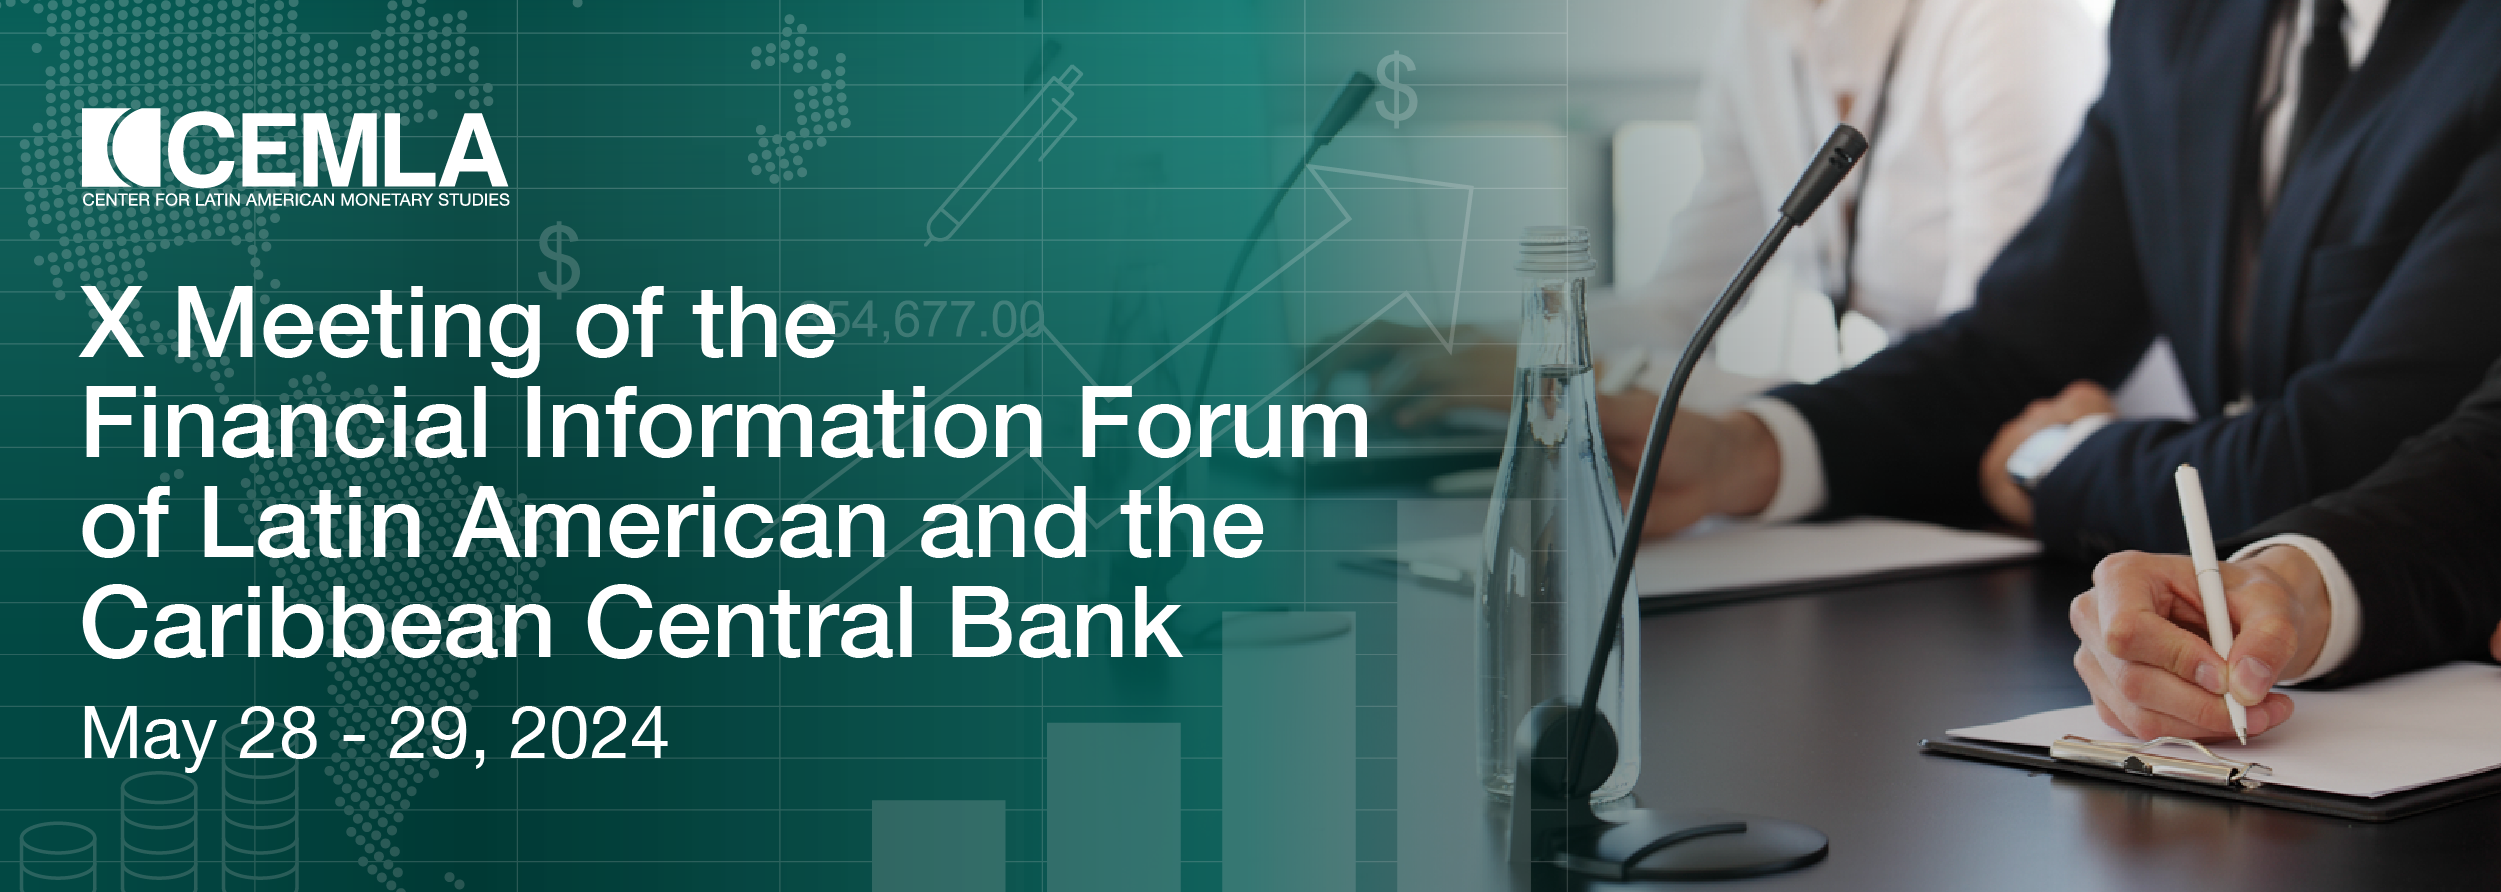 X Reunión del Foro de Información Financiera de Bancos Centrales de América Latina y el Caribe